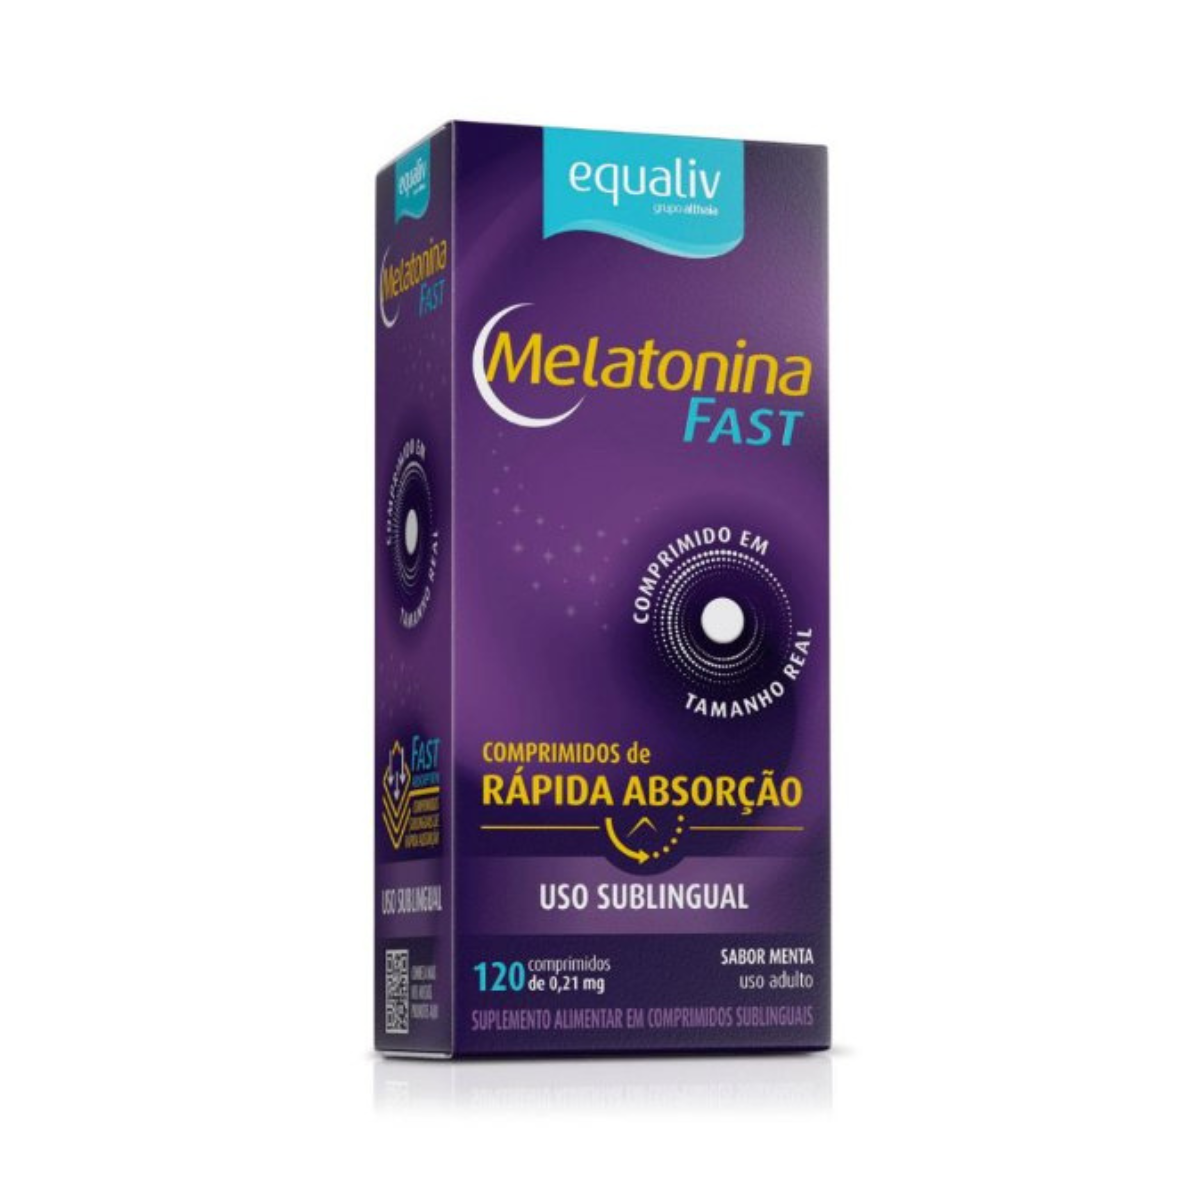 Melatonina Fast - 120 comprimidos - Equaliv  / VENCIMENTO  MÊS 10/2023